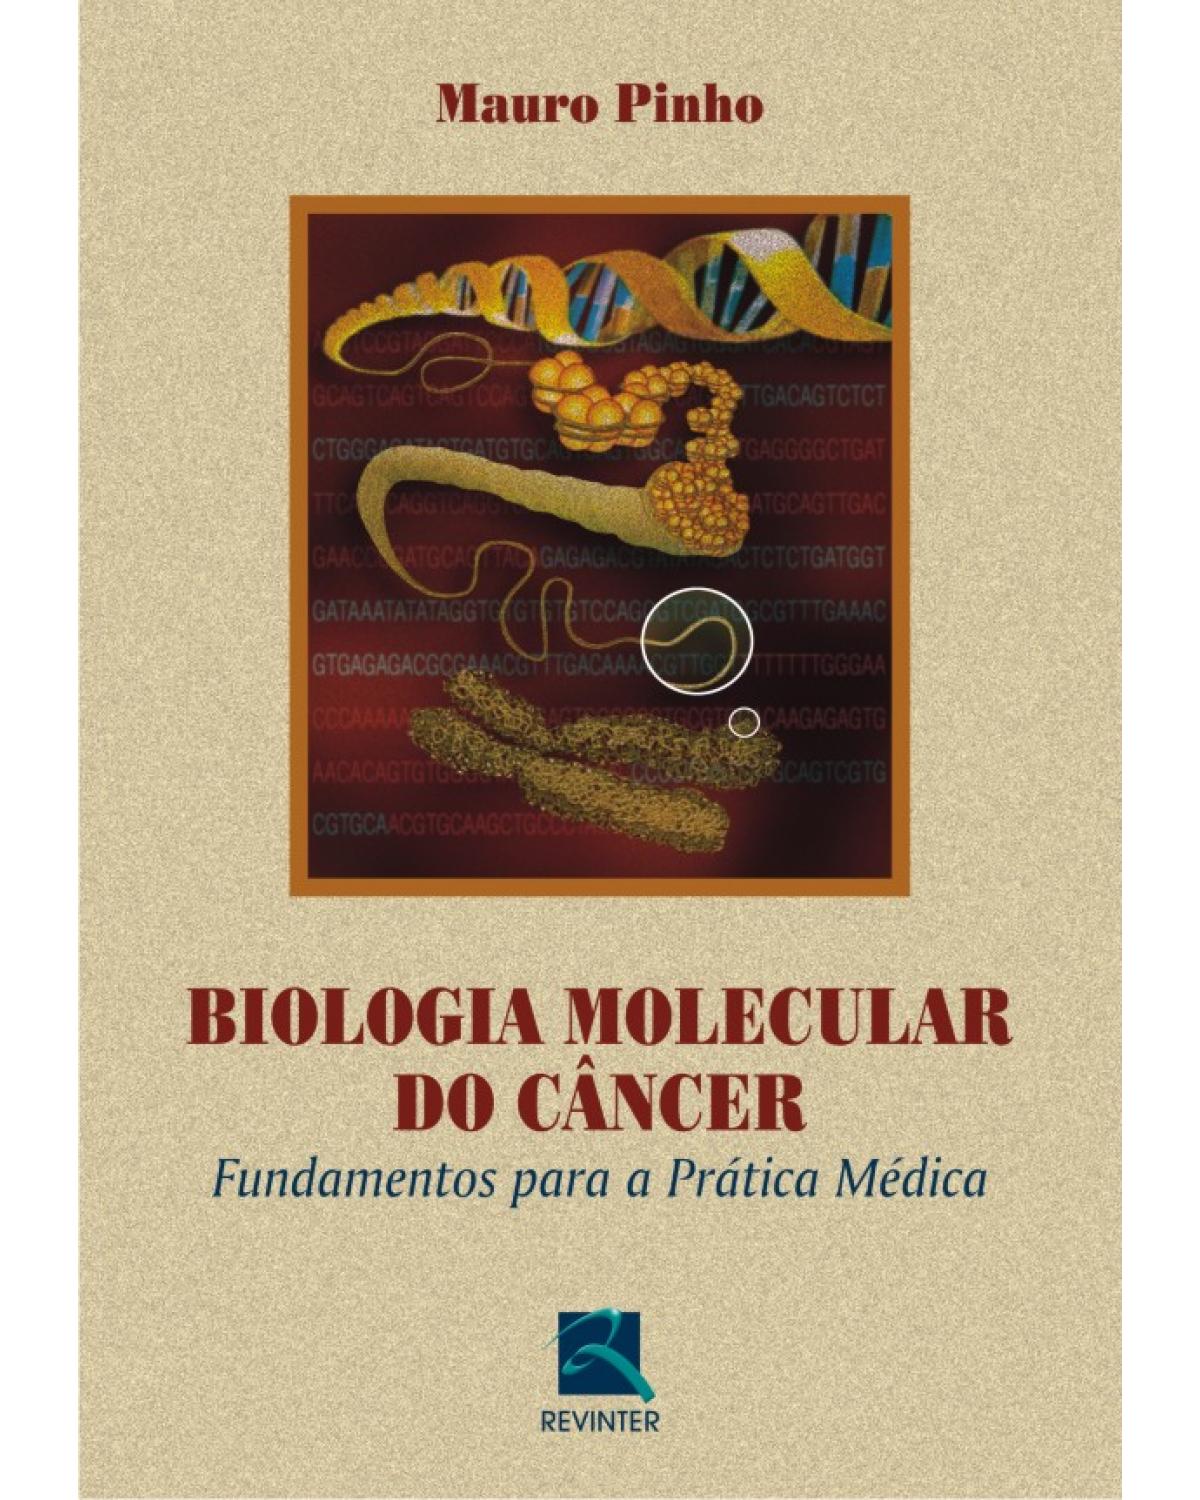 Biologia molecular do câncer - fundamentos para a prática médica - 1ª Edição | 2004